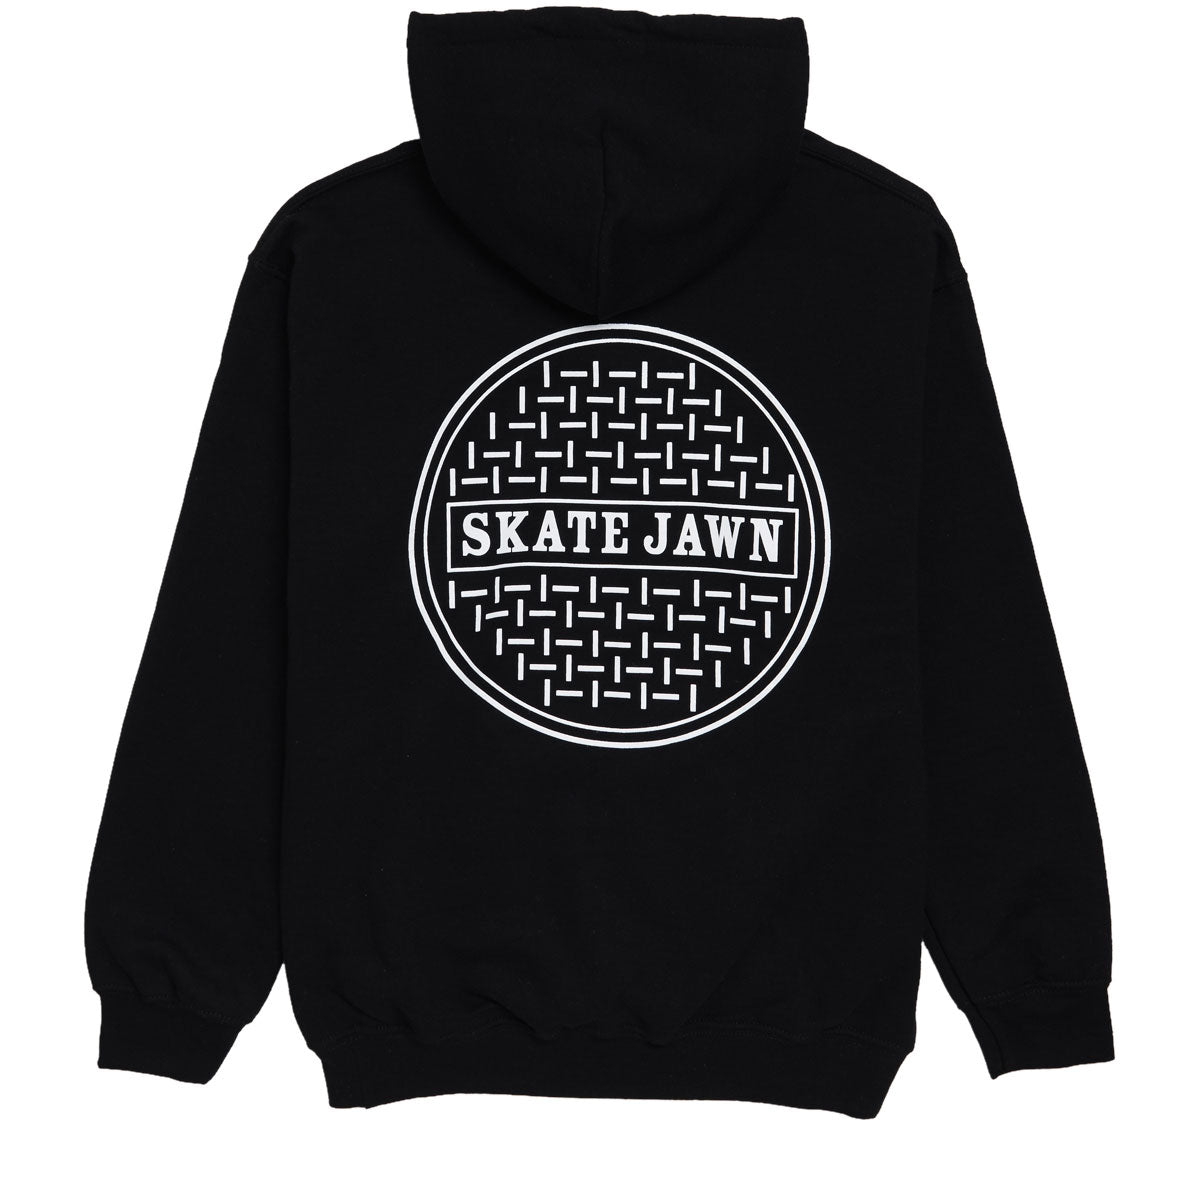 Skate Jawn Sewer Cap Hoodie - Black image 1